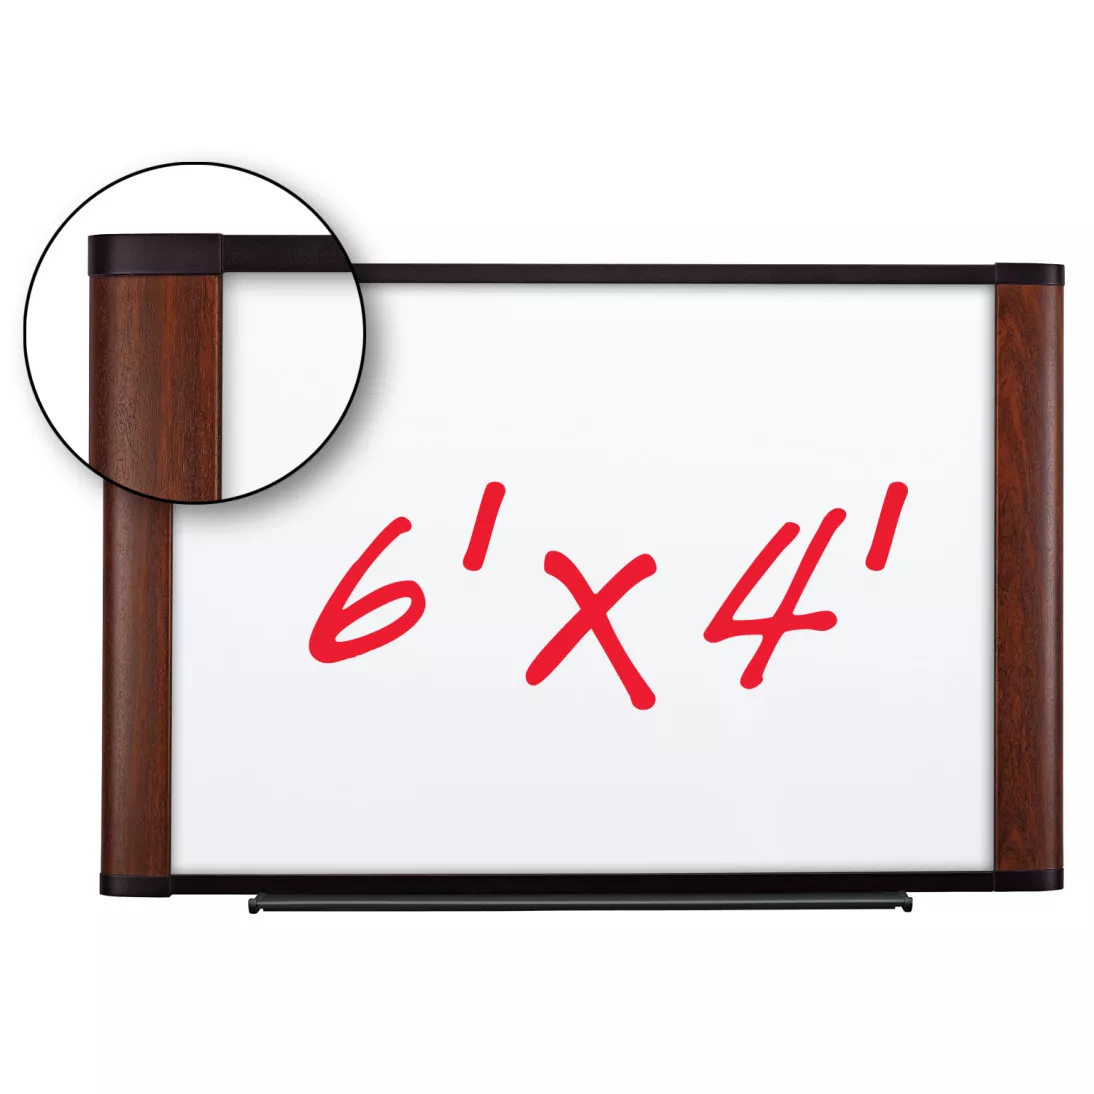 3M™ Melamine Dry Erase Board M7248MY, 72 in x 48 in x 1 in (182.8 cm x
121.9 cm x 2.5 cm) Mahogany Finish Frame